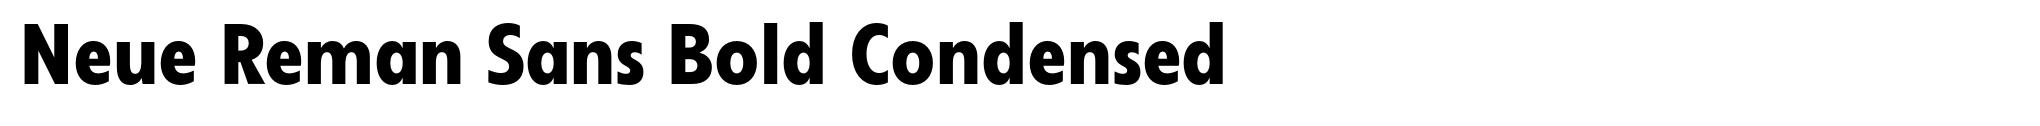 Neue Reman Sans Bold Condensed image